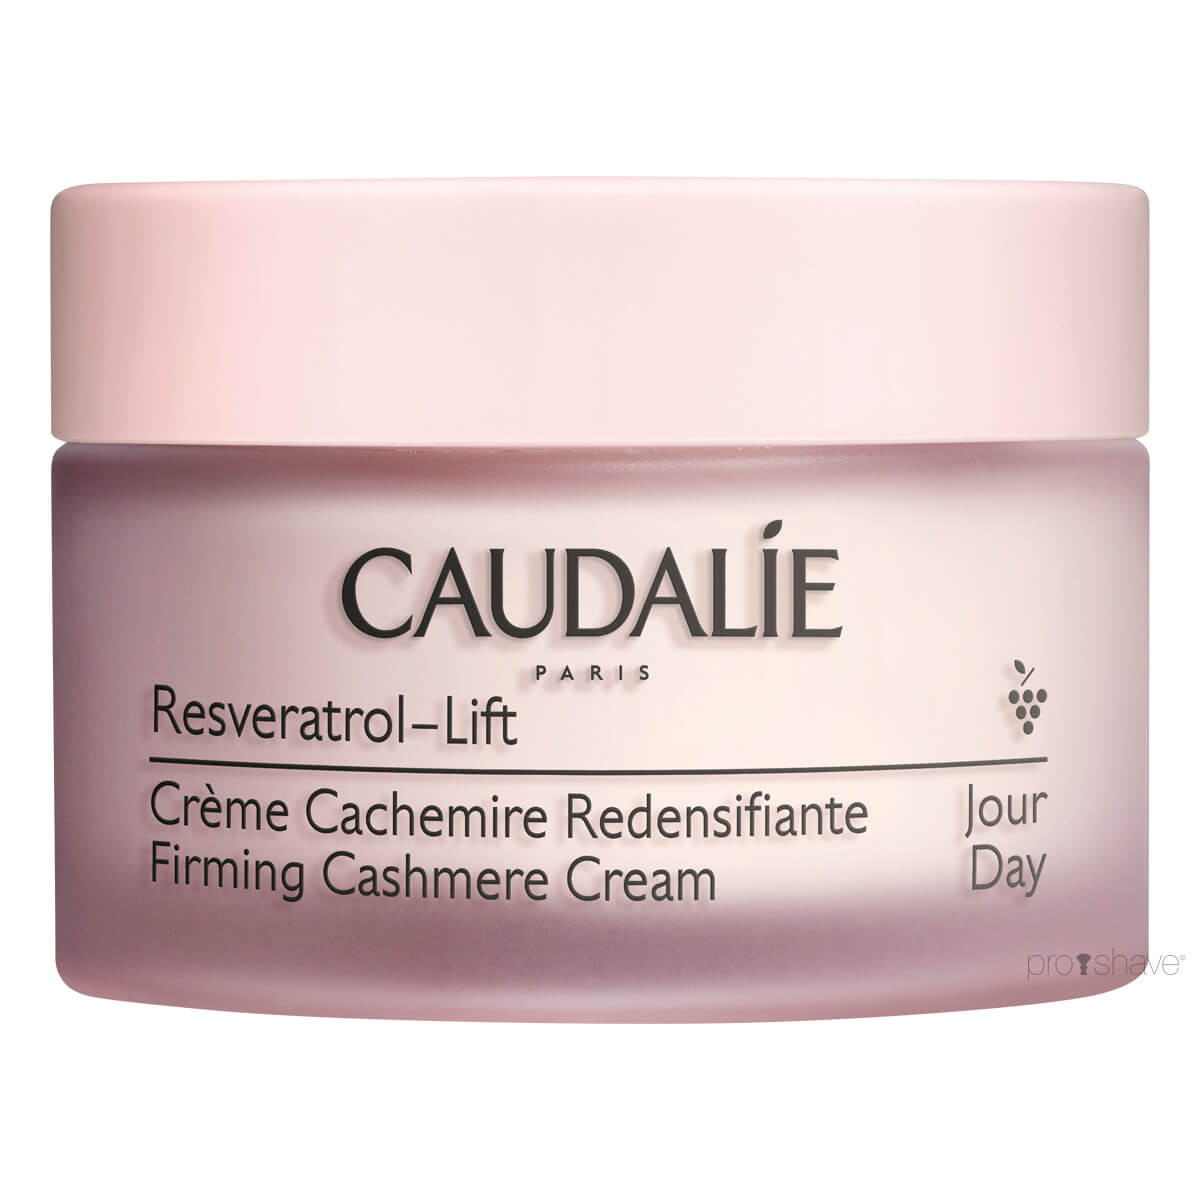 Billede af Caudalie Resveratrol Lift, Firming Cashmere Cream, Rejsestørrelse, 15 ml.